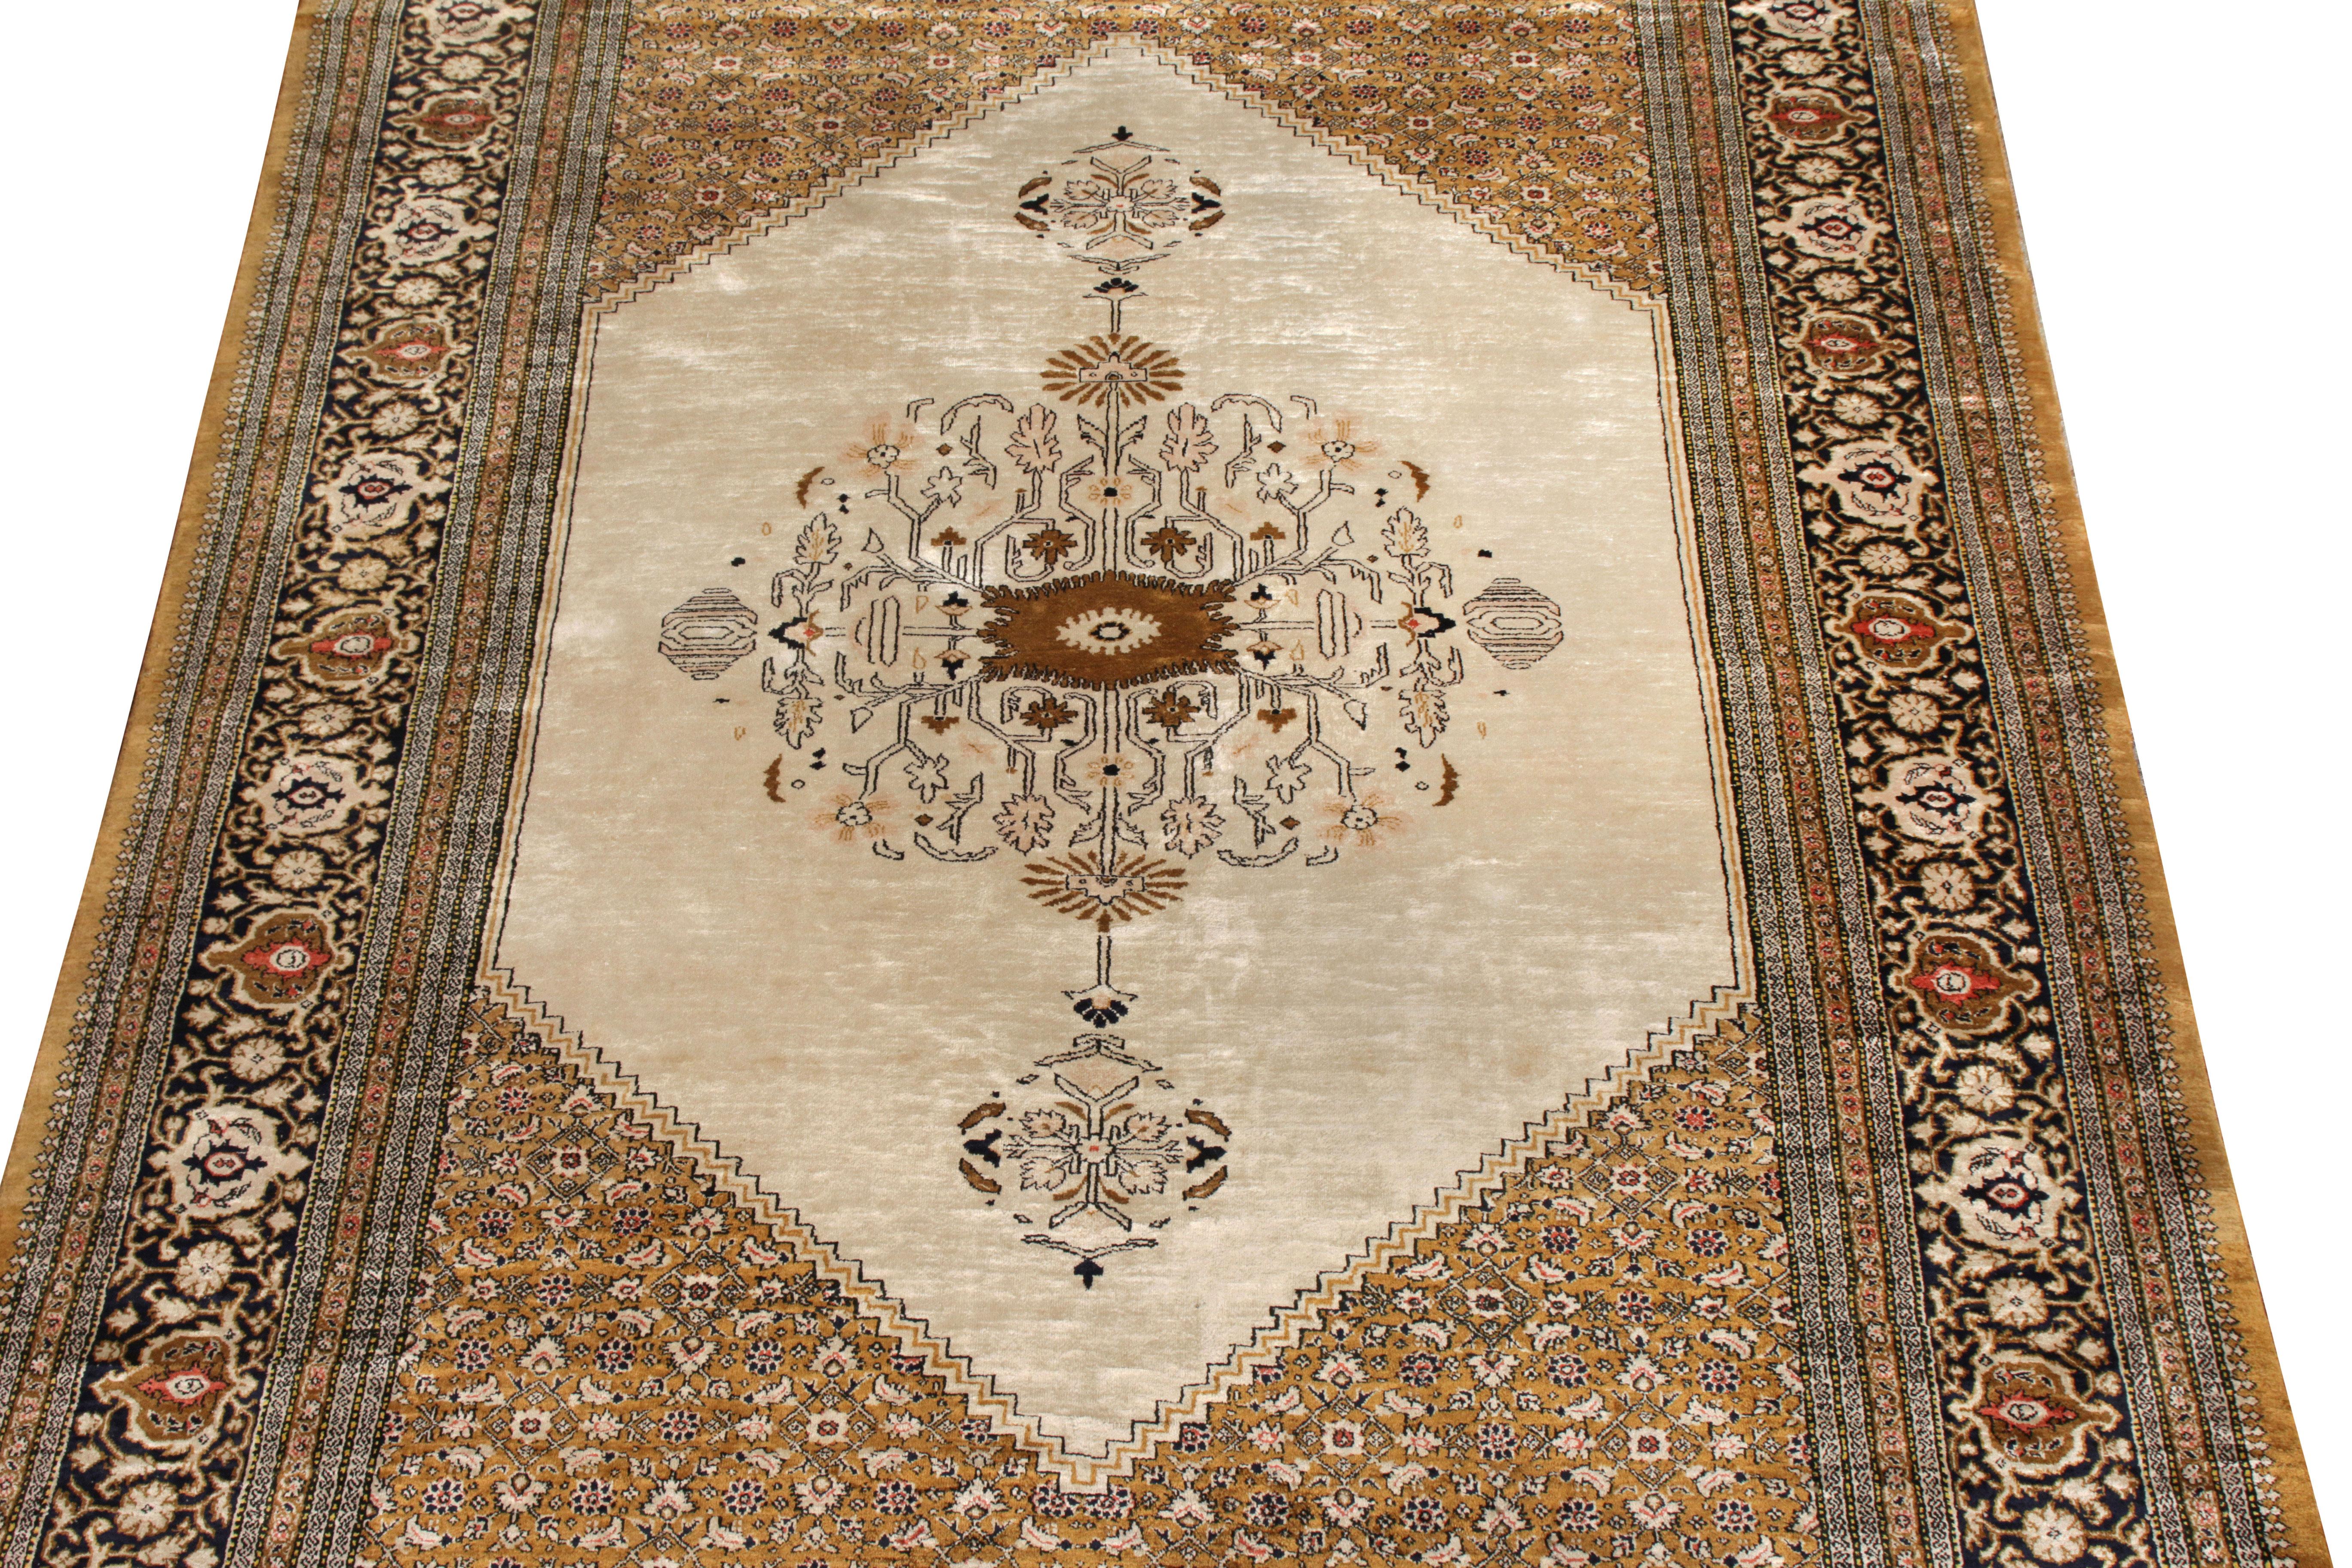 Originaire de Perse vers 1950-1960, ce tapis persan vintage est une pièce distincte de sa lignée de design Qum avec une esthétique fabuleuse et une composition en soie naturelle. La vision de ce dessin 4x6 se manifeste par un beige-brun attrayant en